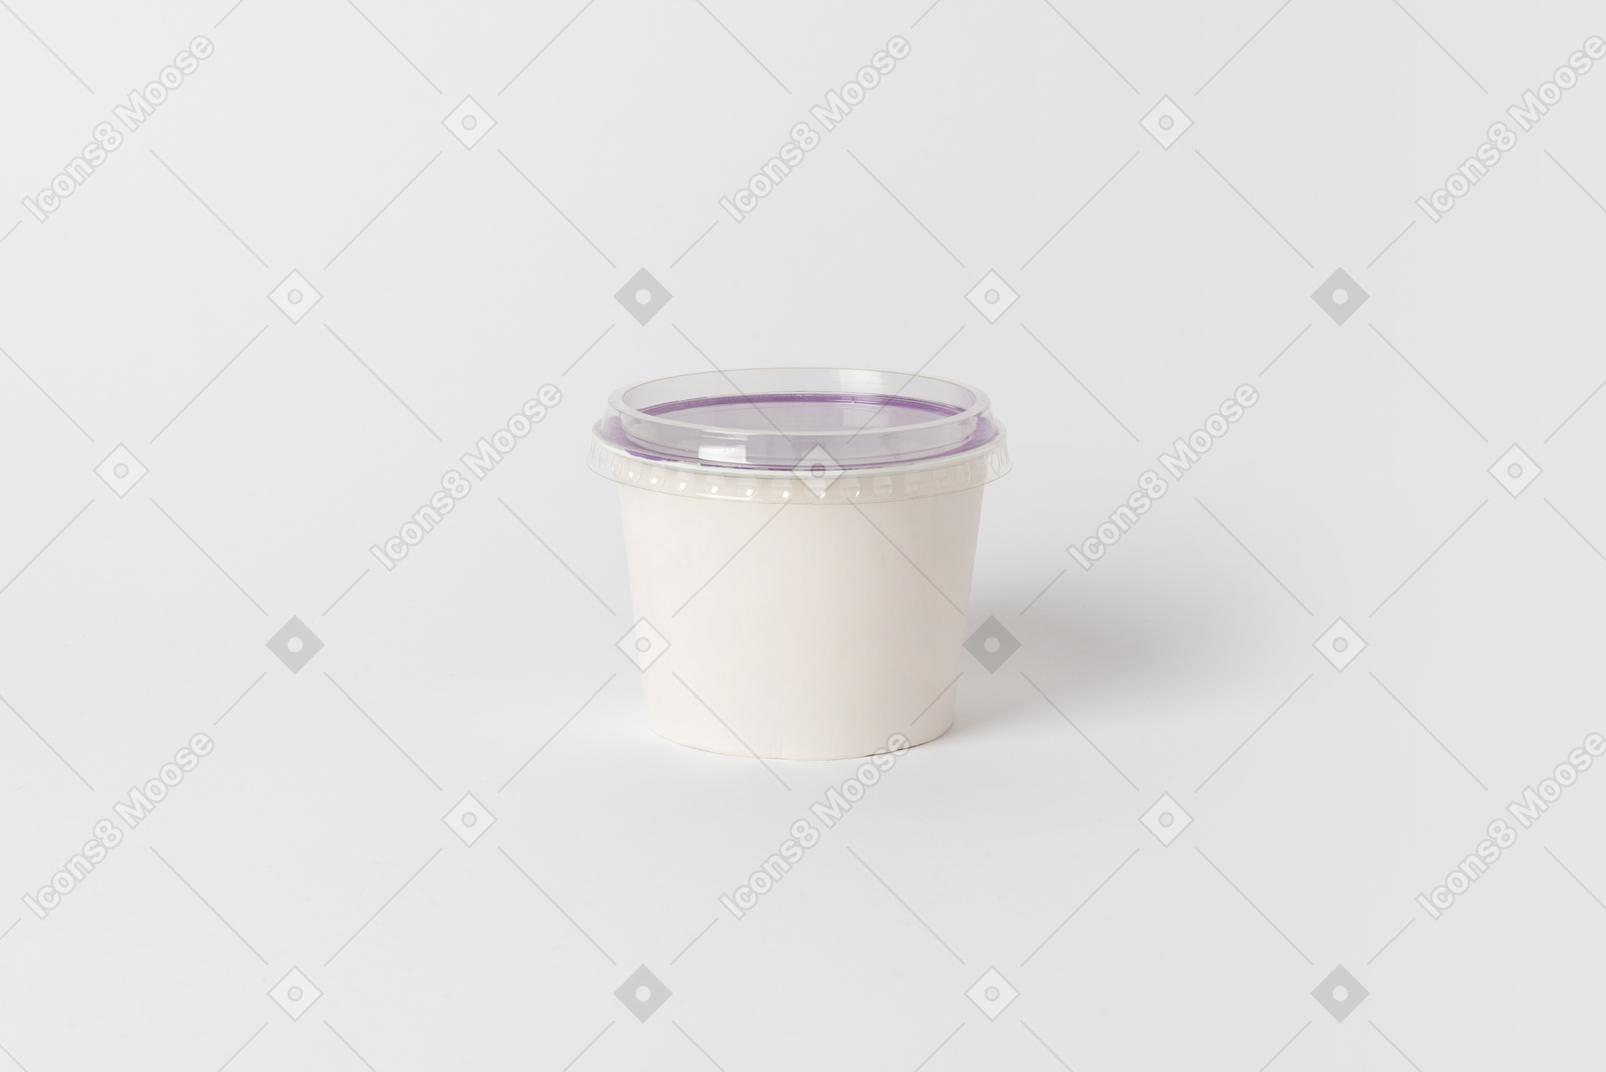 Una lata de crema agria